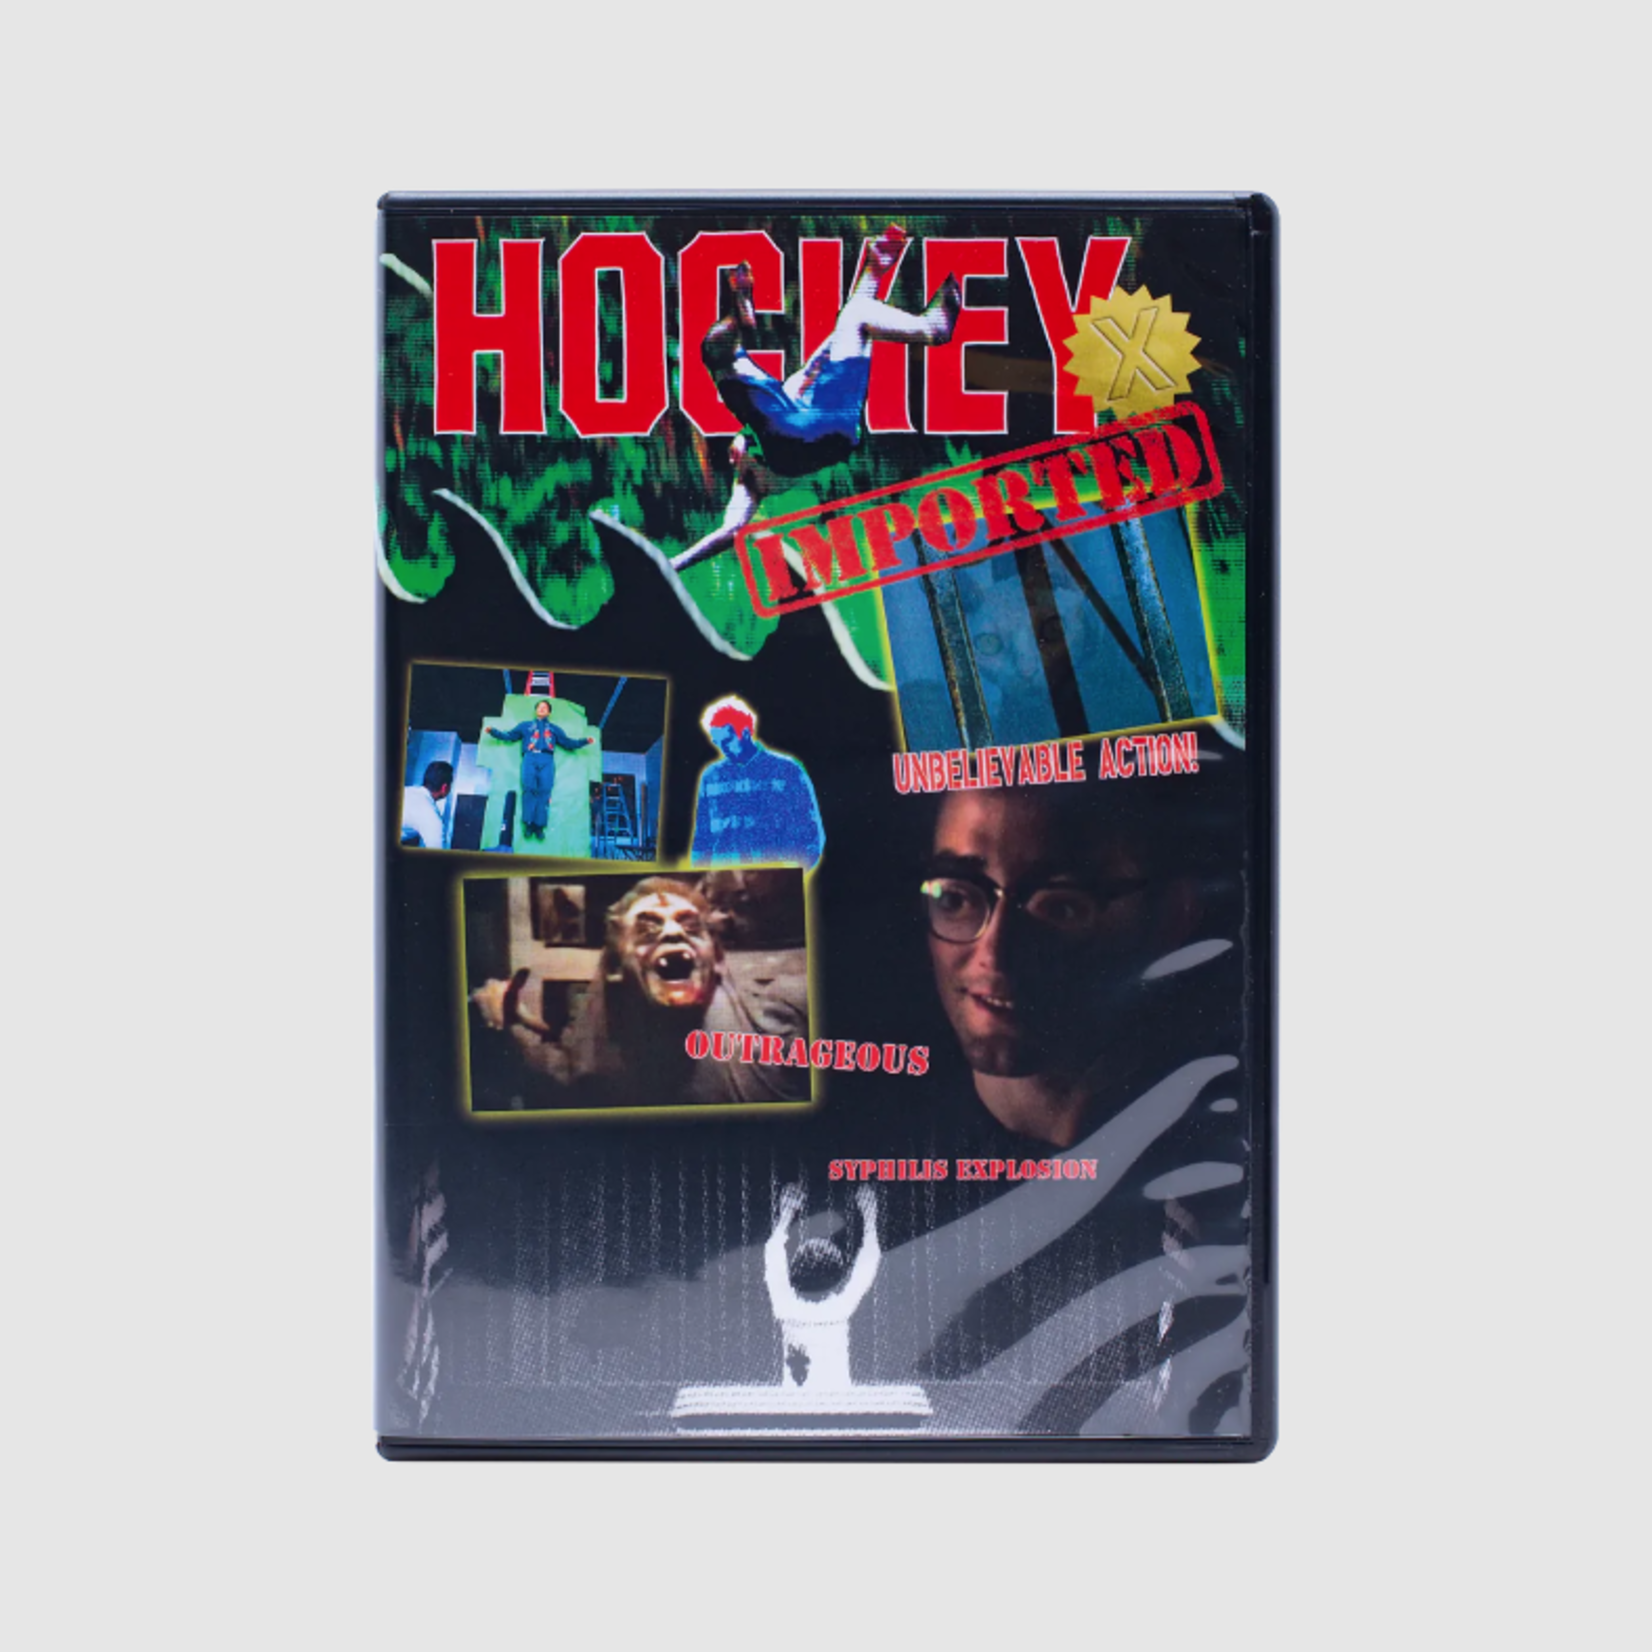 Hockey Hockey X/III Video DVD